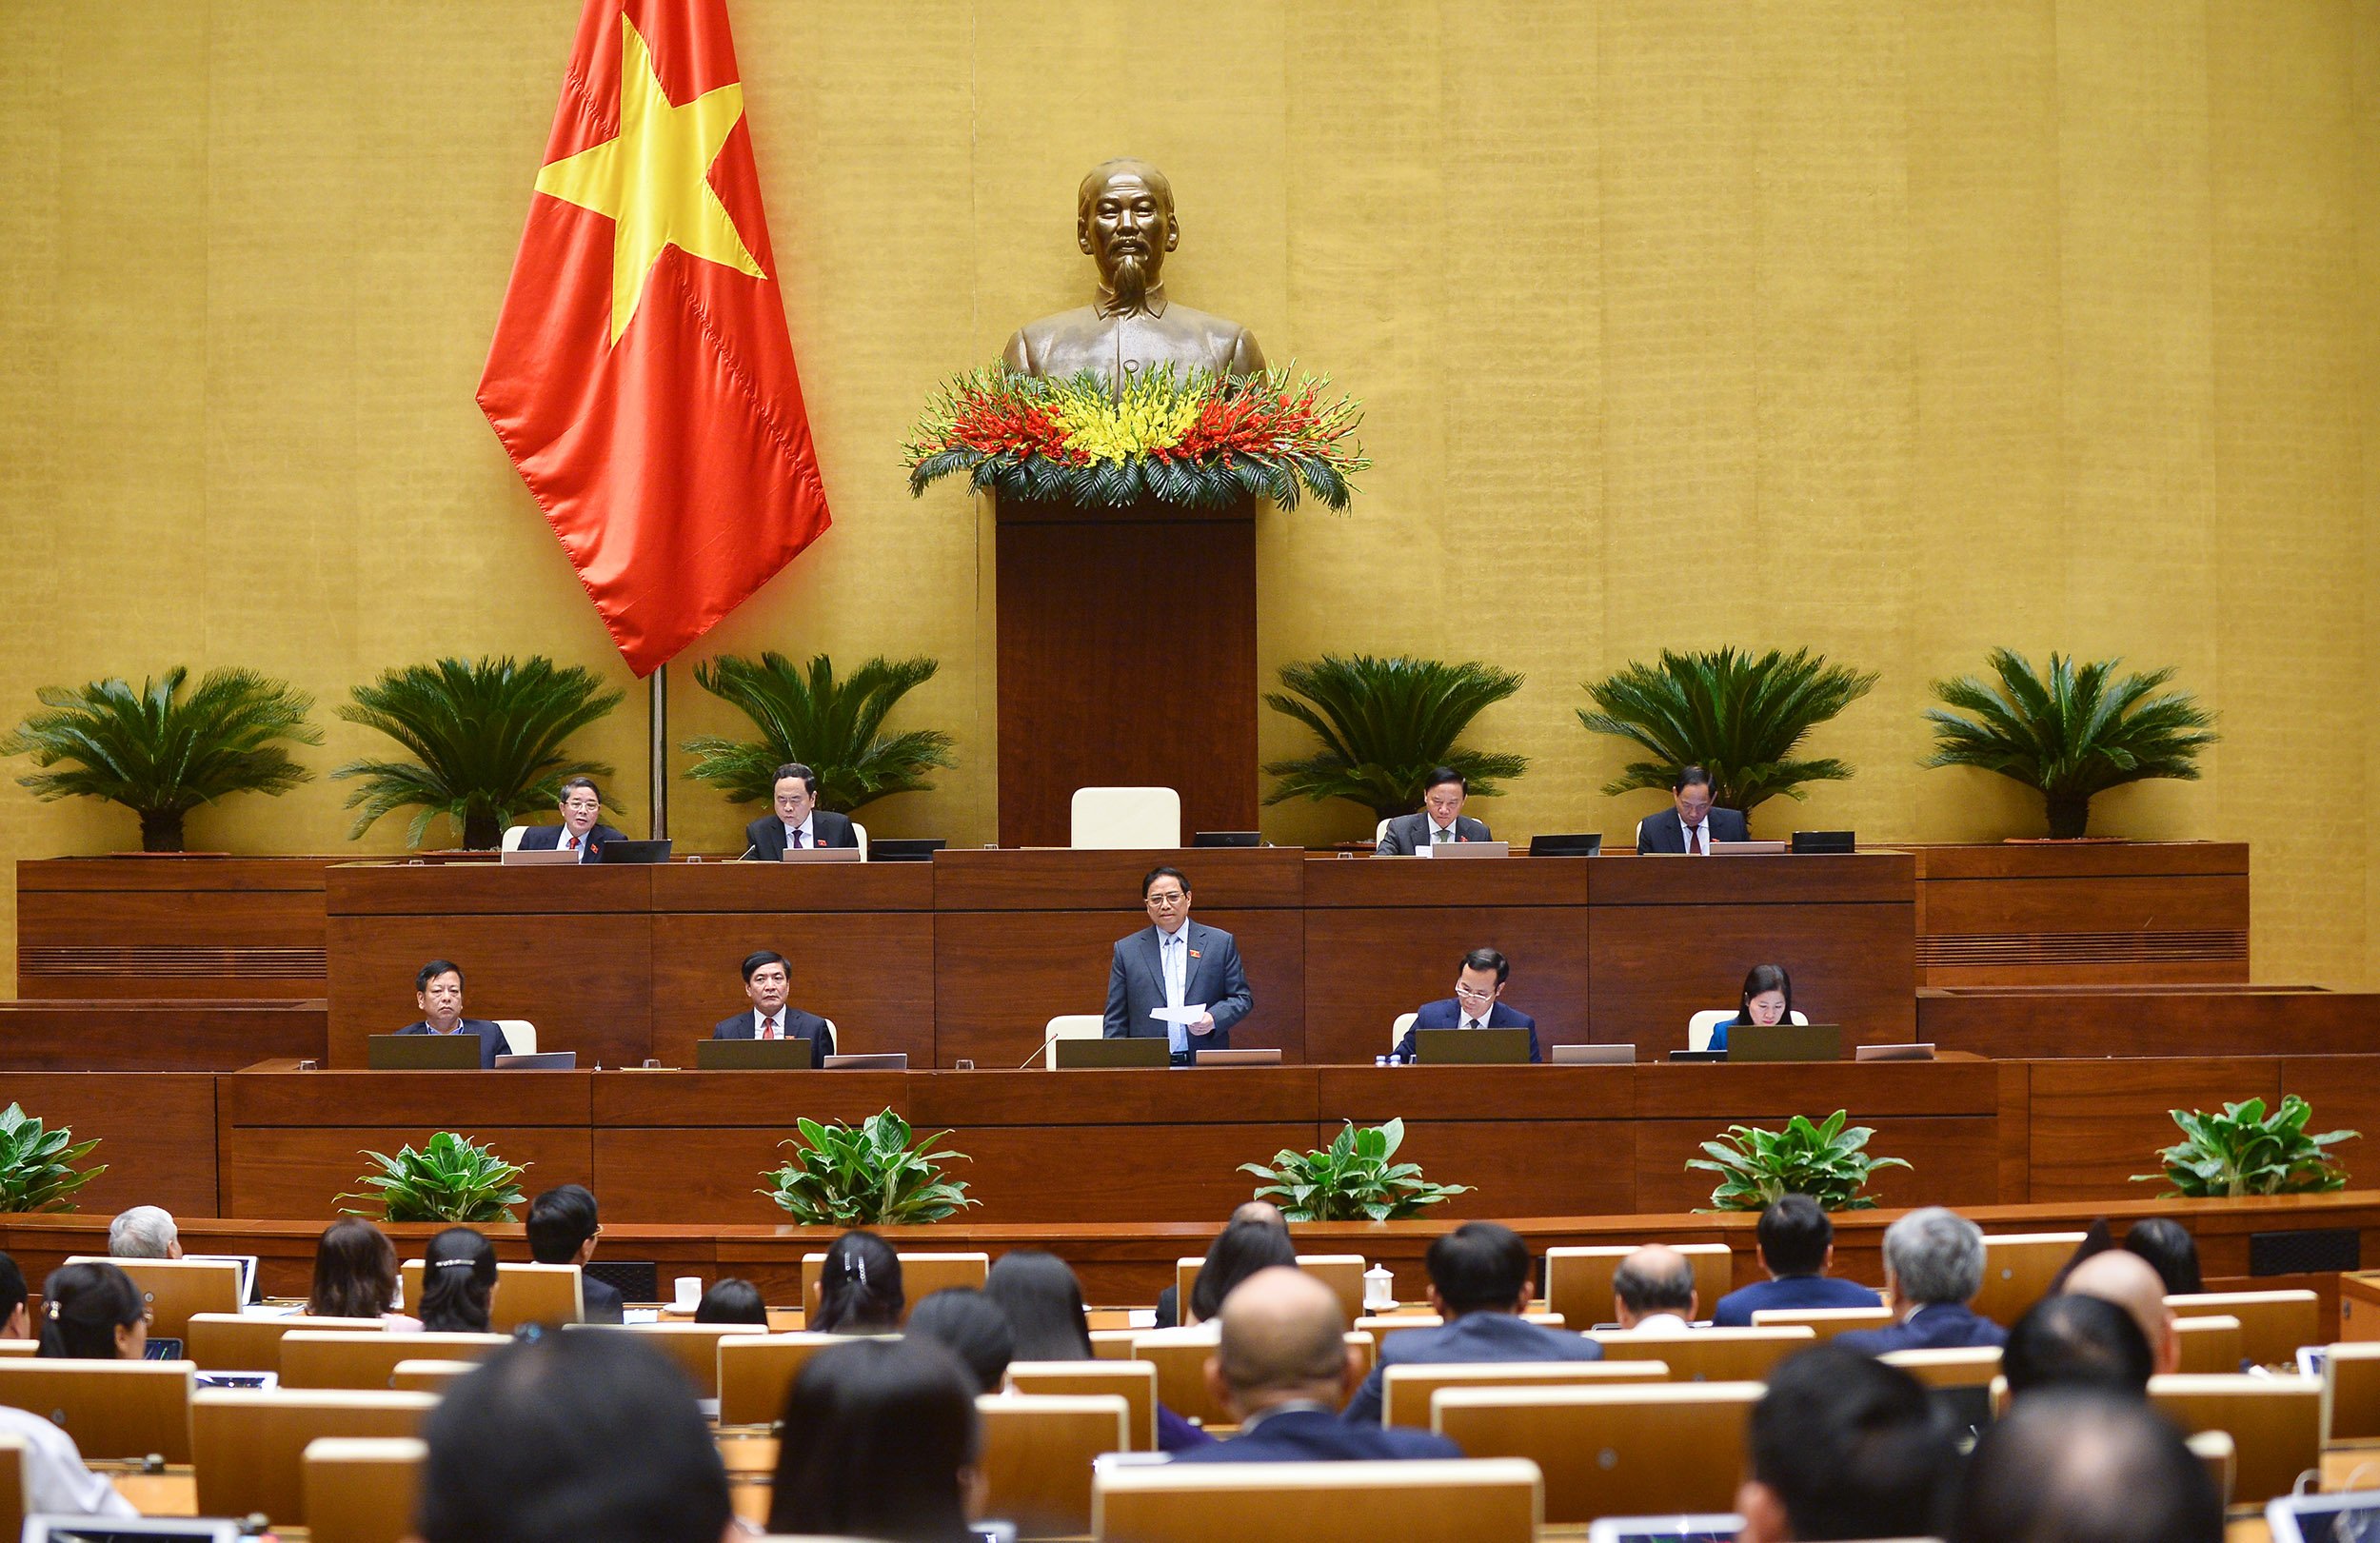 Thủ tướng Phạm Minh Chính khẳng định, cải cách thể chế là một trong ba đột phá chiến lược, phục vụ lợi ích của người dân, lấy người dân làm trung tâm, chủ thể. Ảnh: Quốc hội.